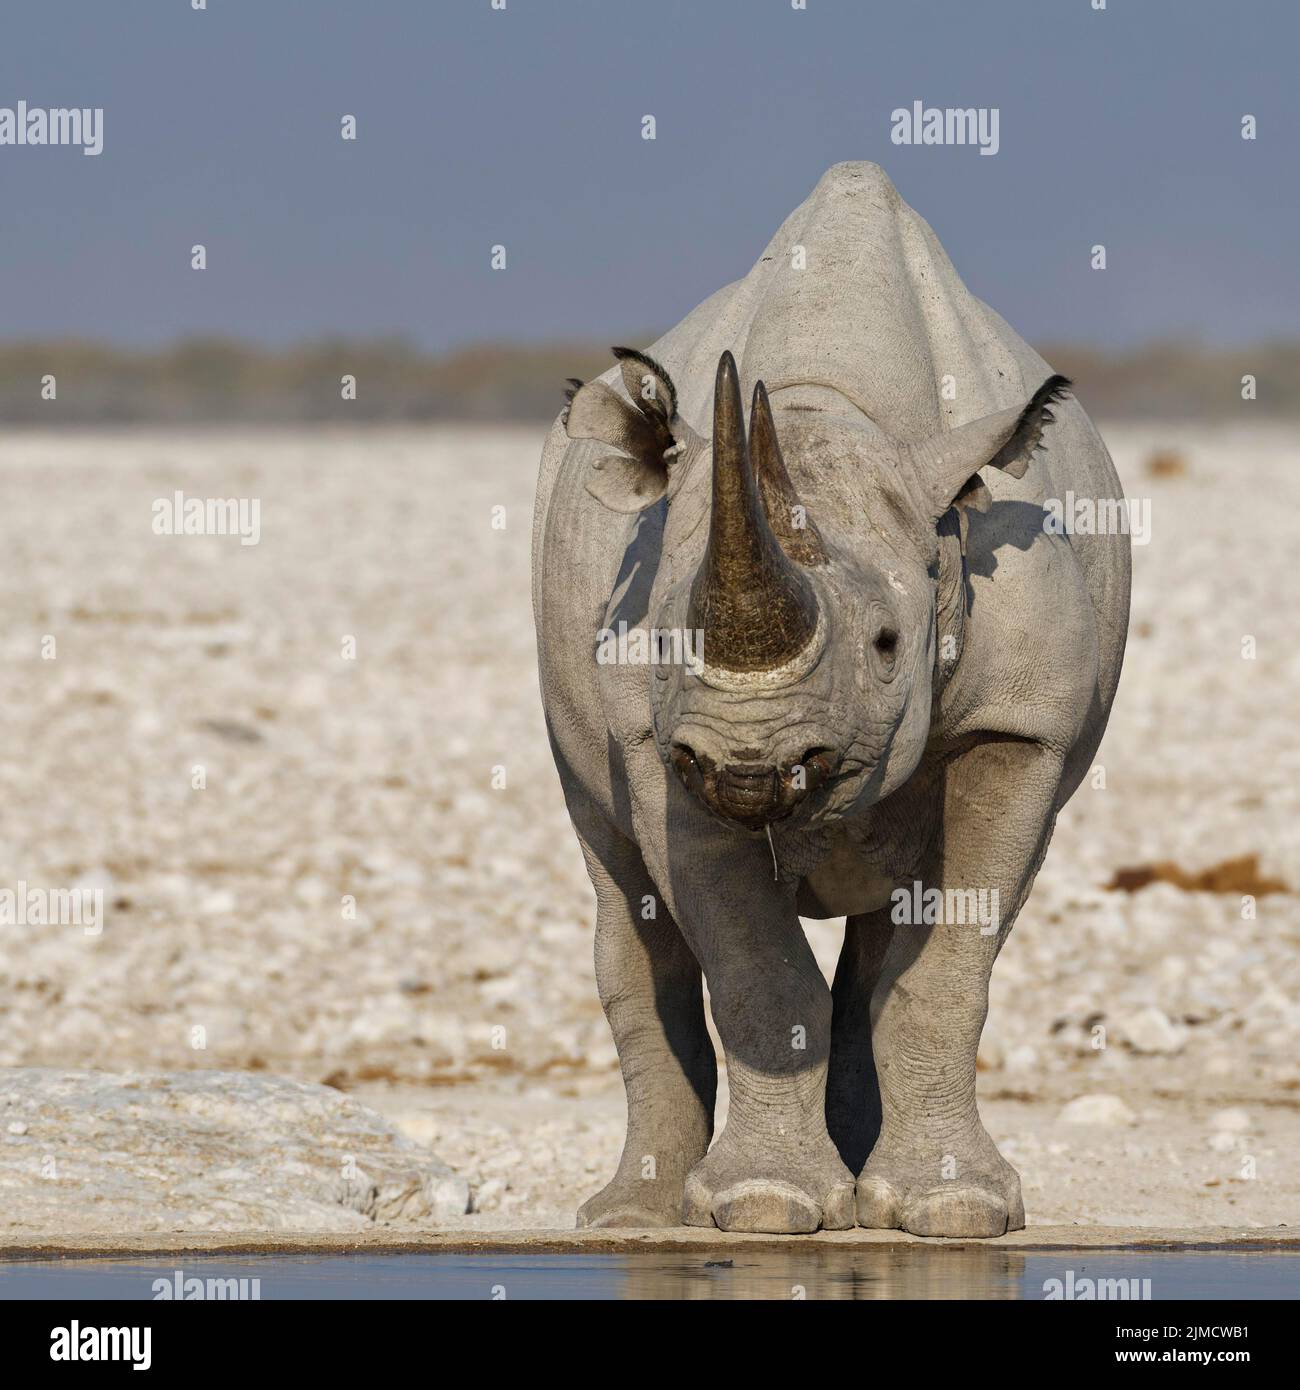 Rinoceronte negro (Diceros bicornis), adulto de pie en el estanque, retrato de animales, Parque Nacional Etosha, Namibia, África Foto de stock